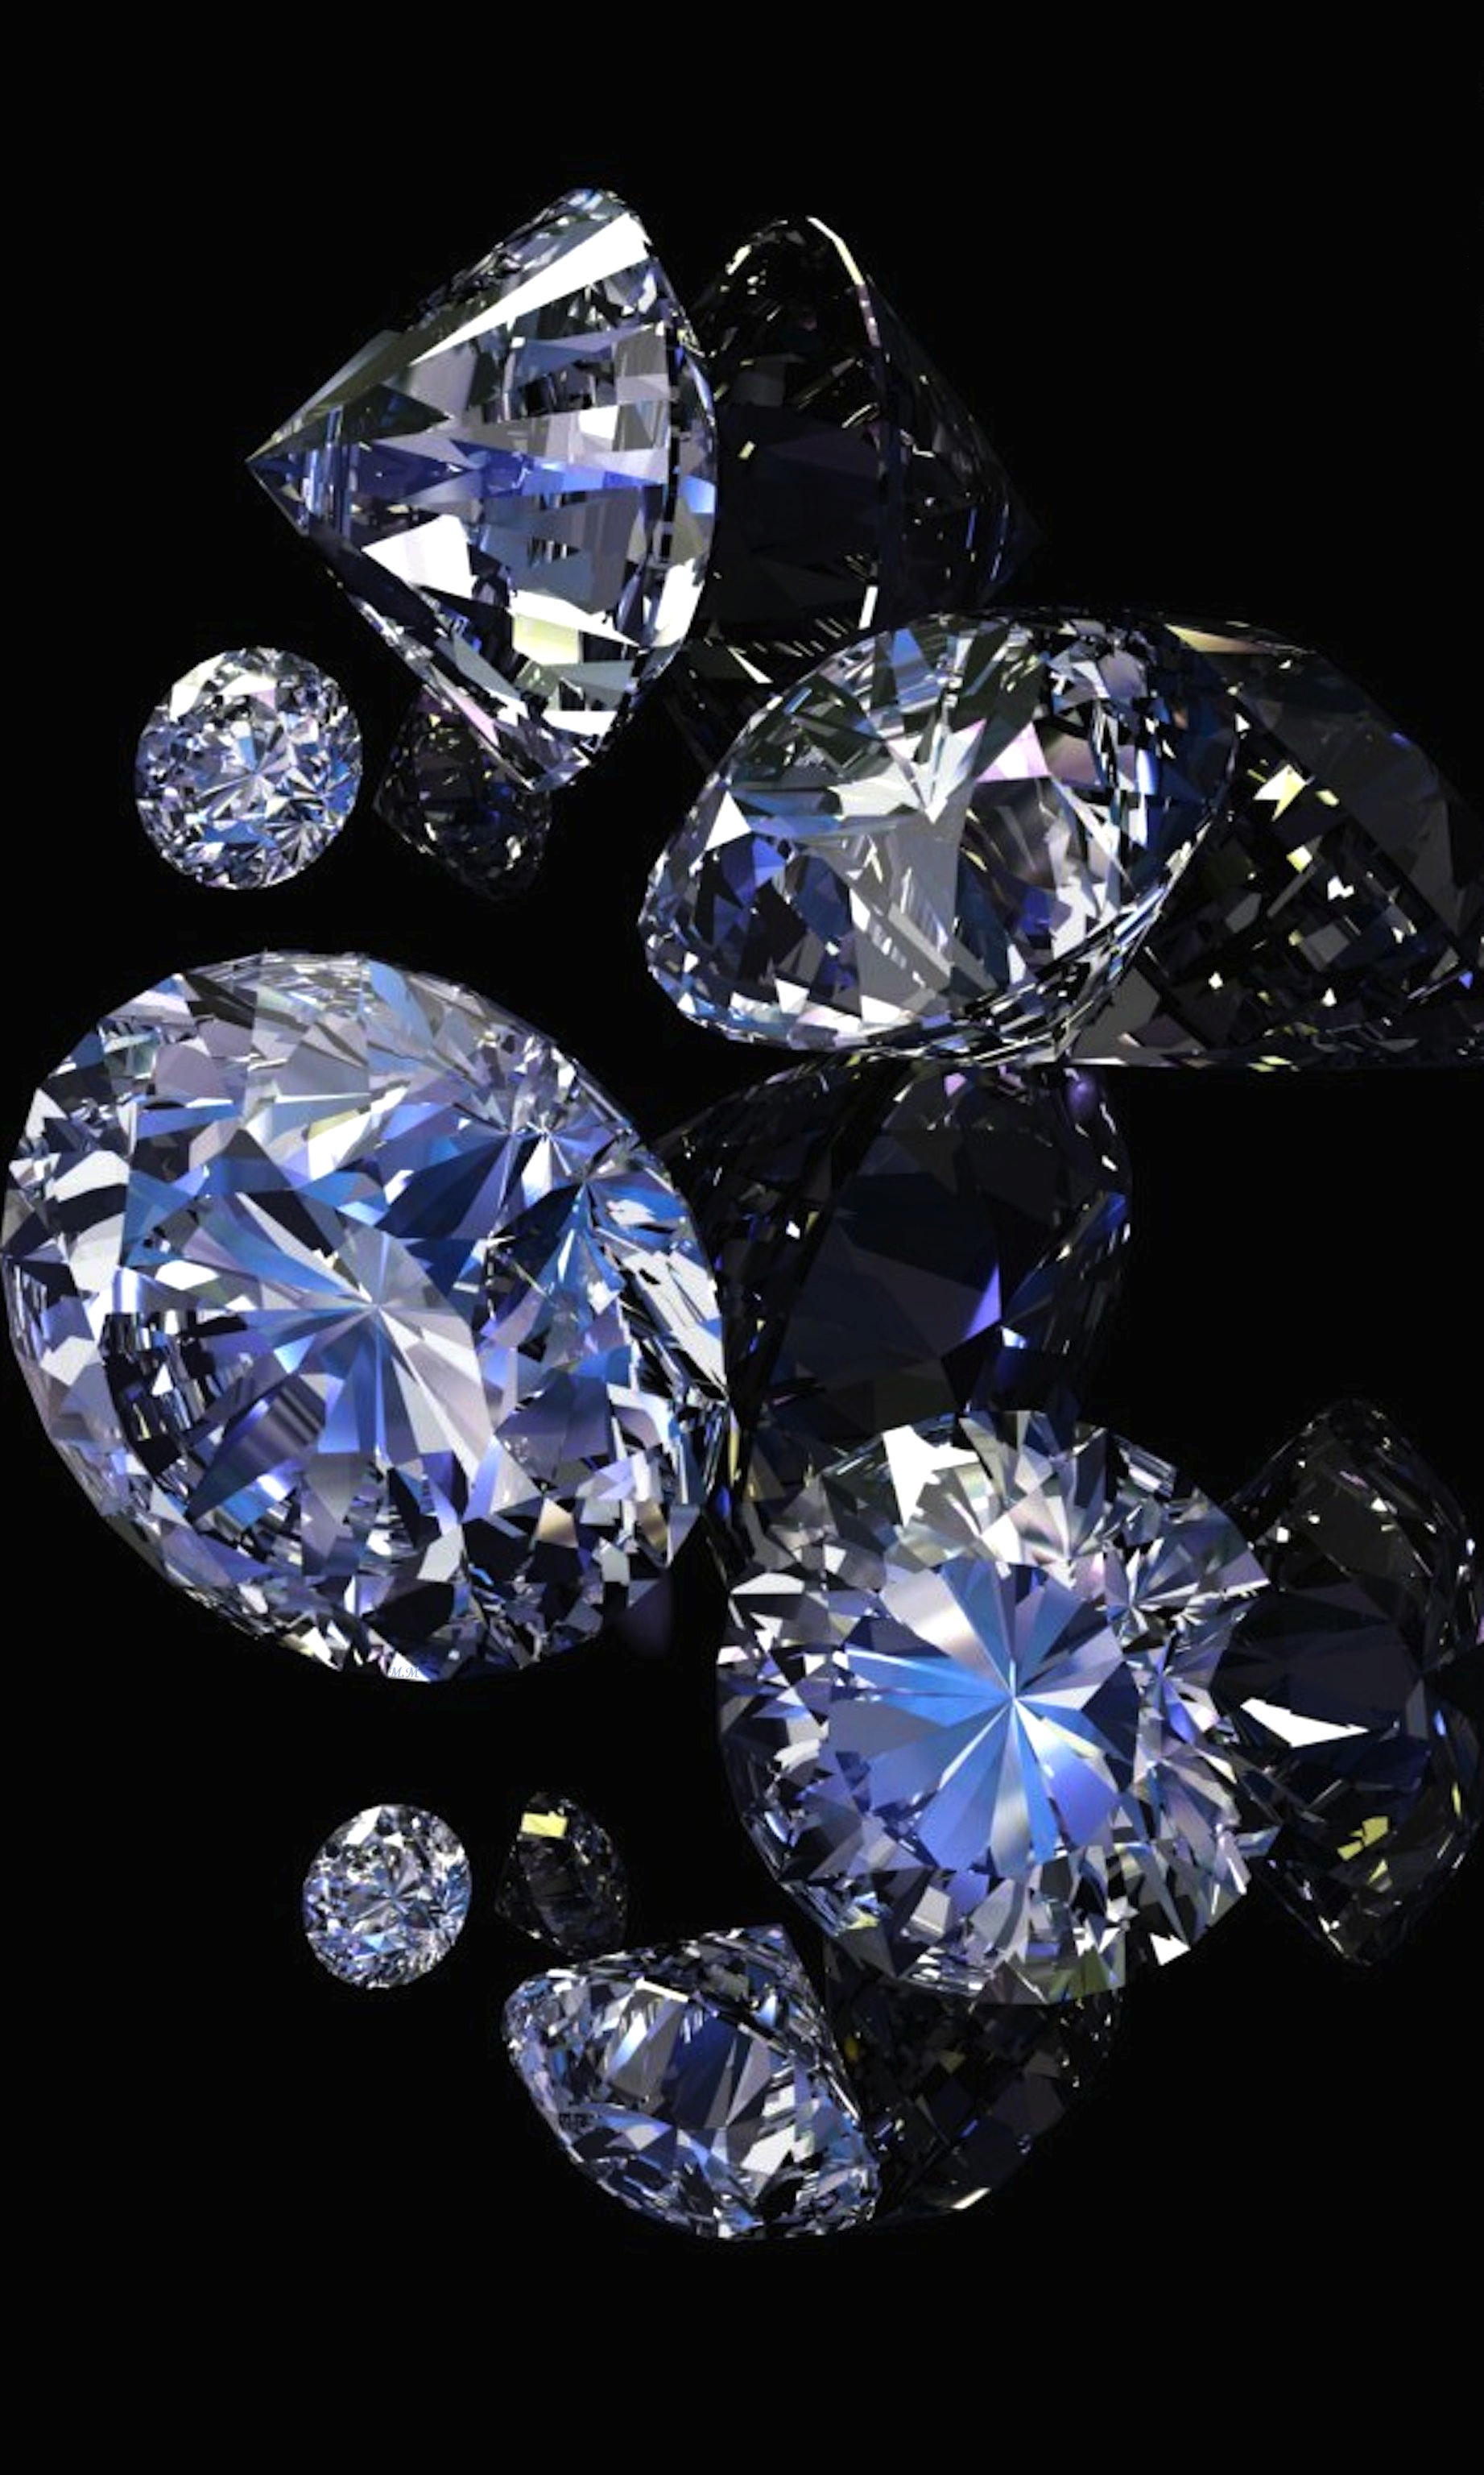 fondos de pantalla de diamantes iphone,azul,diamante,piedra preciosa,azul cobalto,cristal